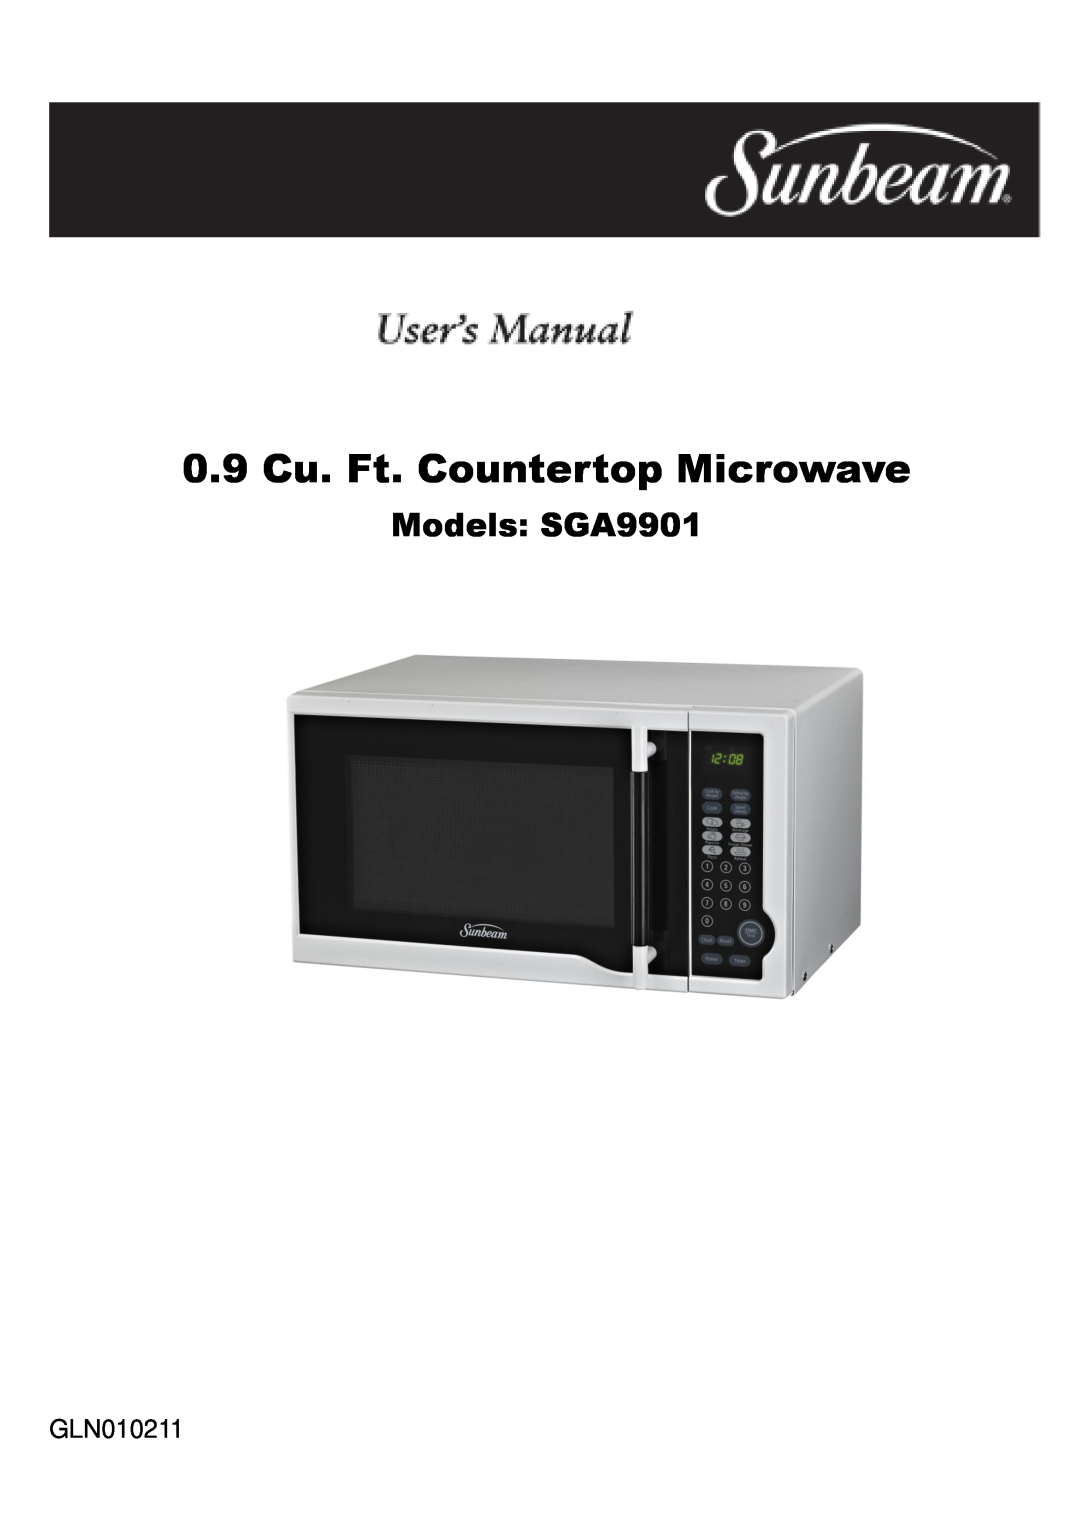 Sunbeam manual 0.9 Cu. Ft. Countertop Microwave, Models SGA9901, GLN010211 